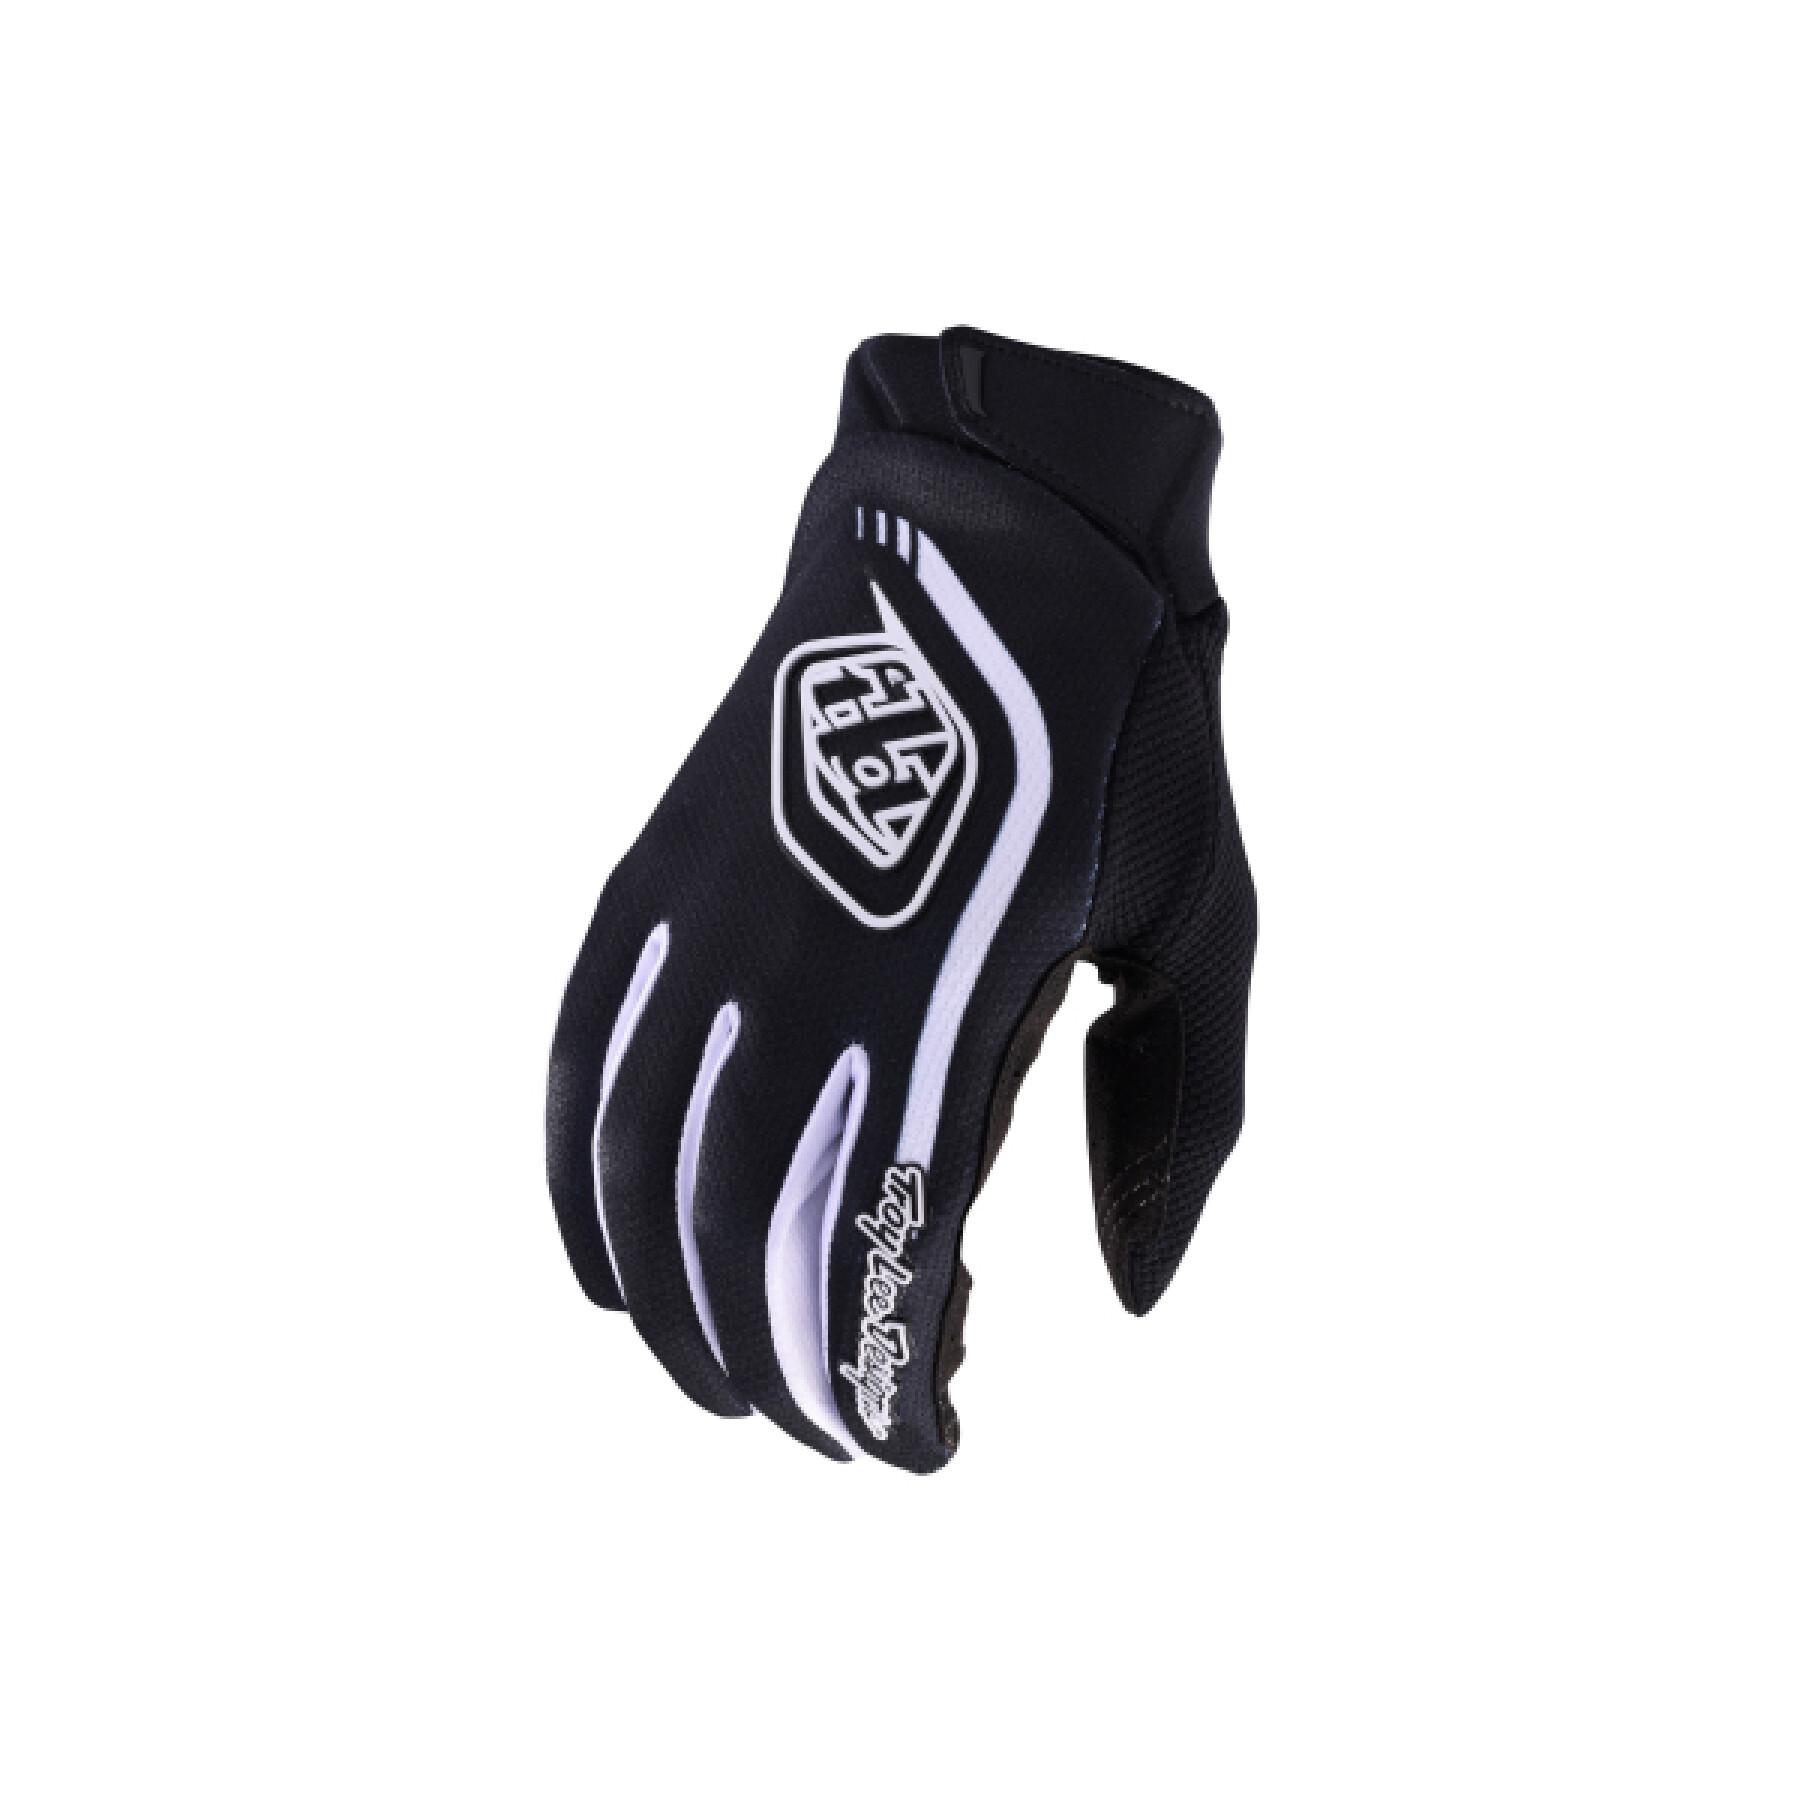 Motocross-Handschuhe Troy Lee Designs GP Pro